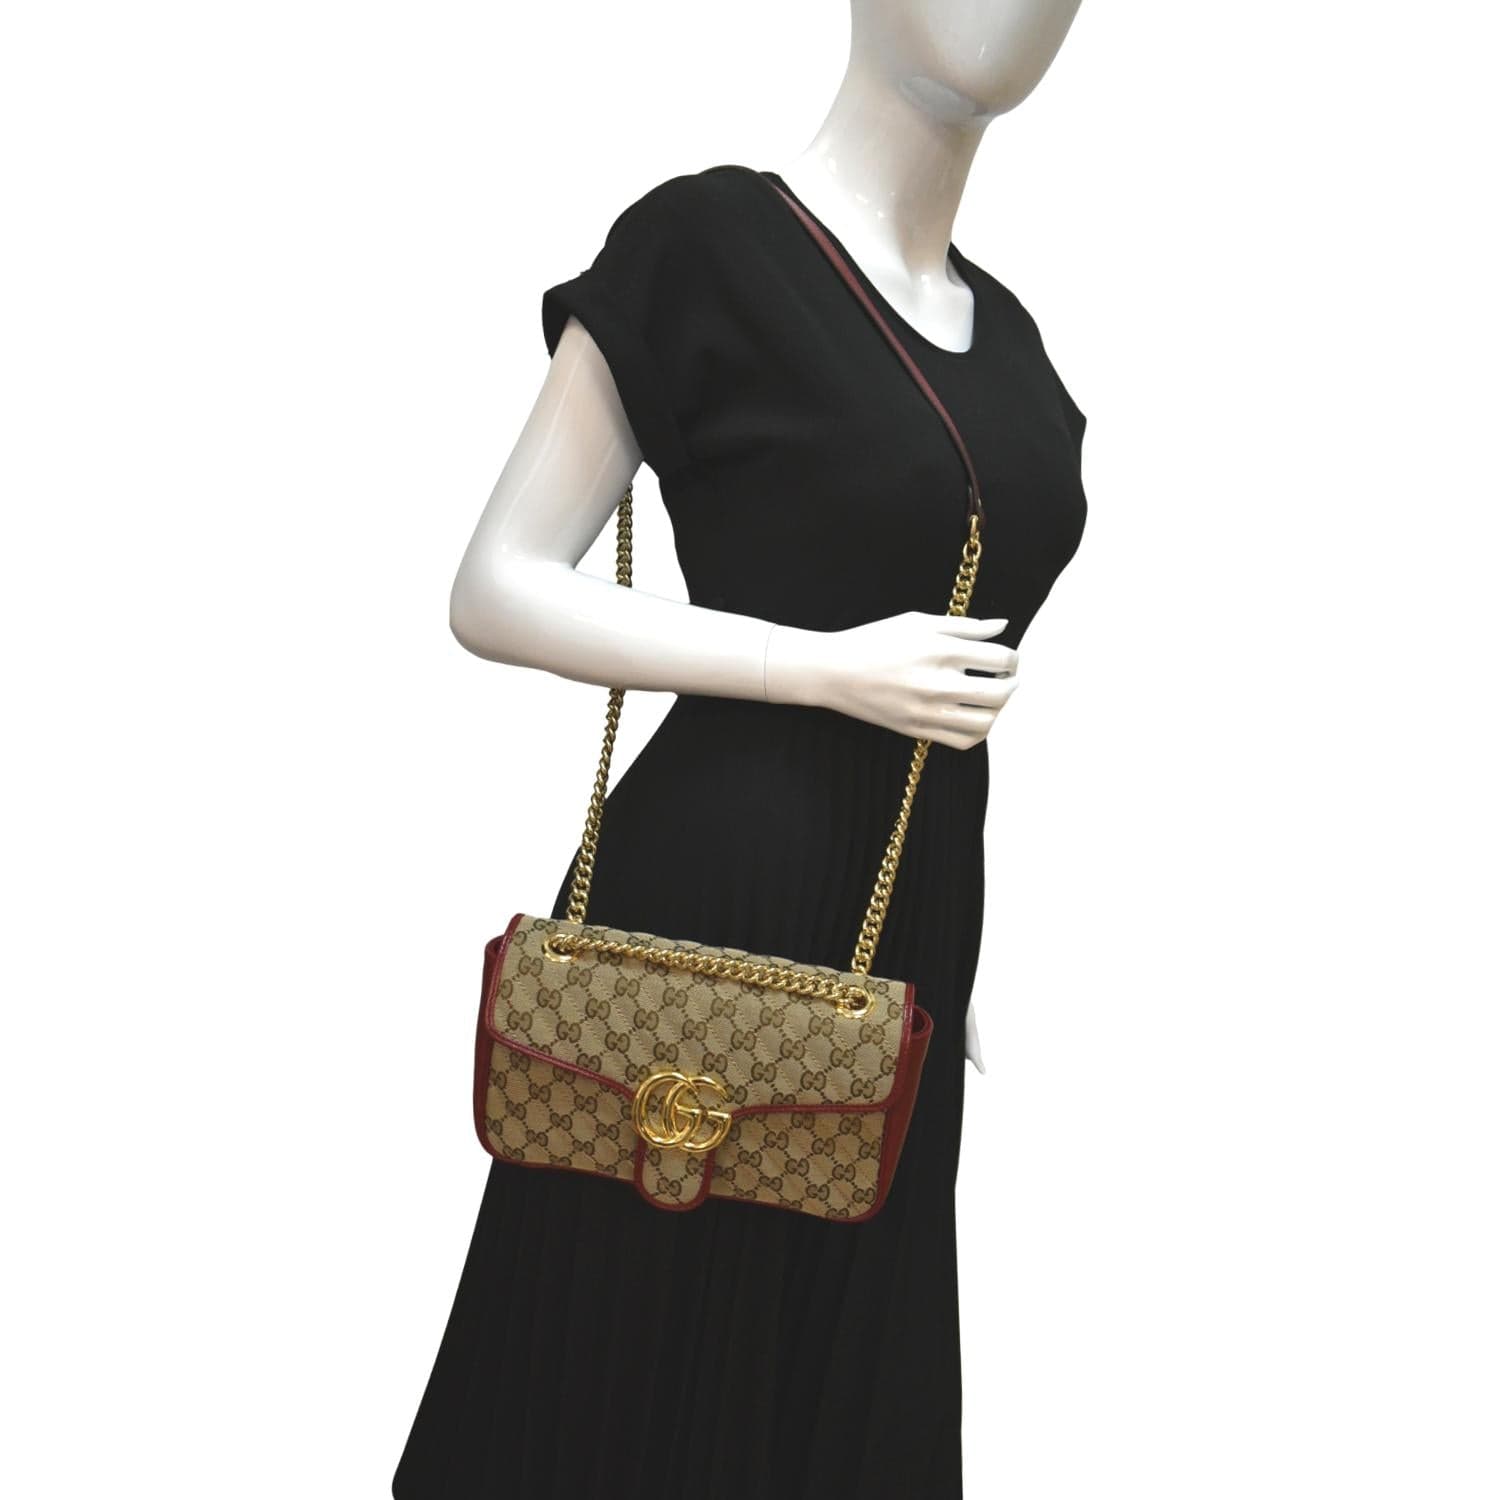 Luxury handbag, women's bag, designer bag GG MARMONT SHOULDER BAG